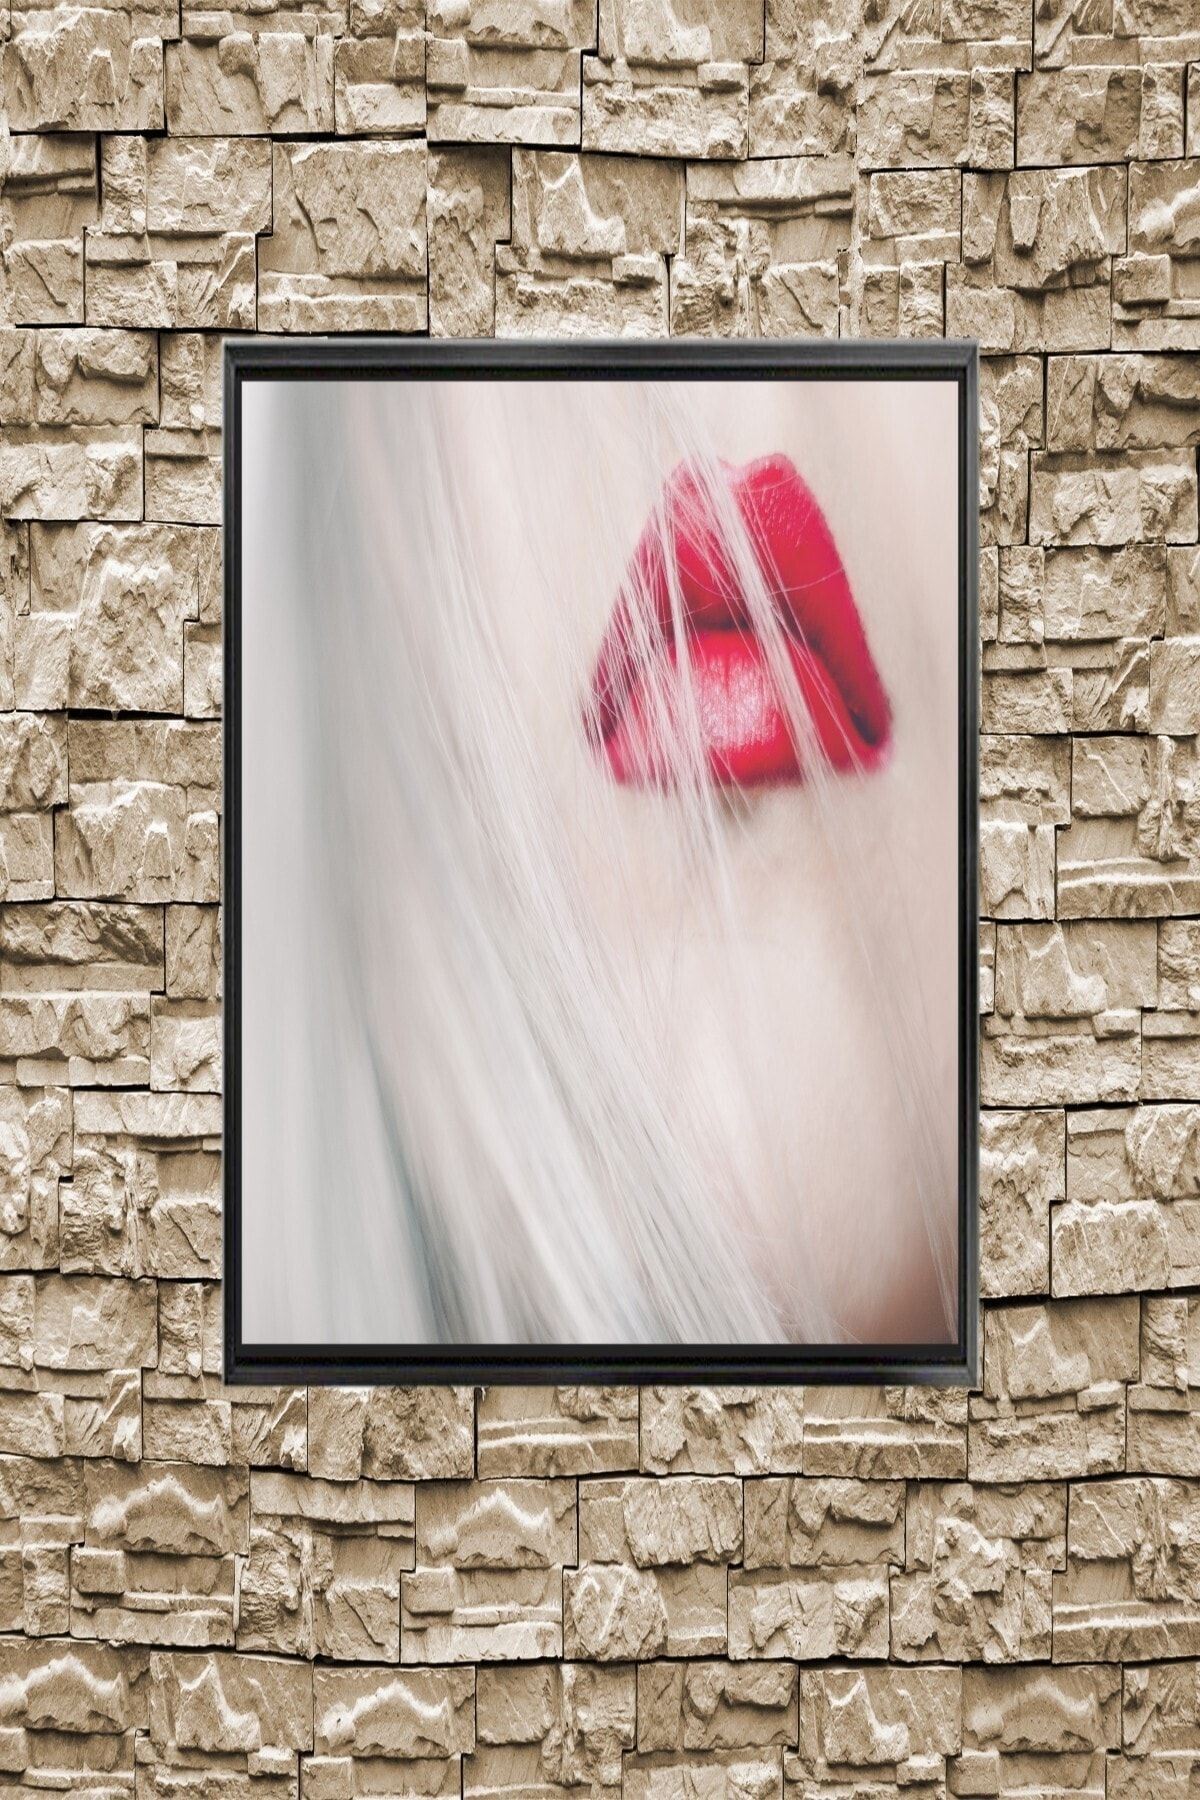 Ena Butik Tuval üzerine kırmızı rujlu kadınKanvas Baskı Kanvas ÇERÇEVELİ 35 x 50 SİYAH